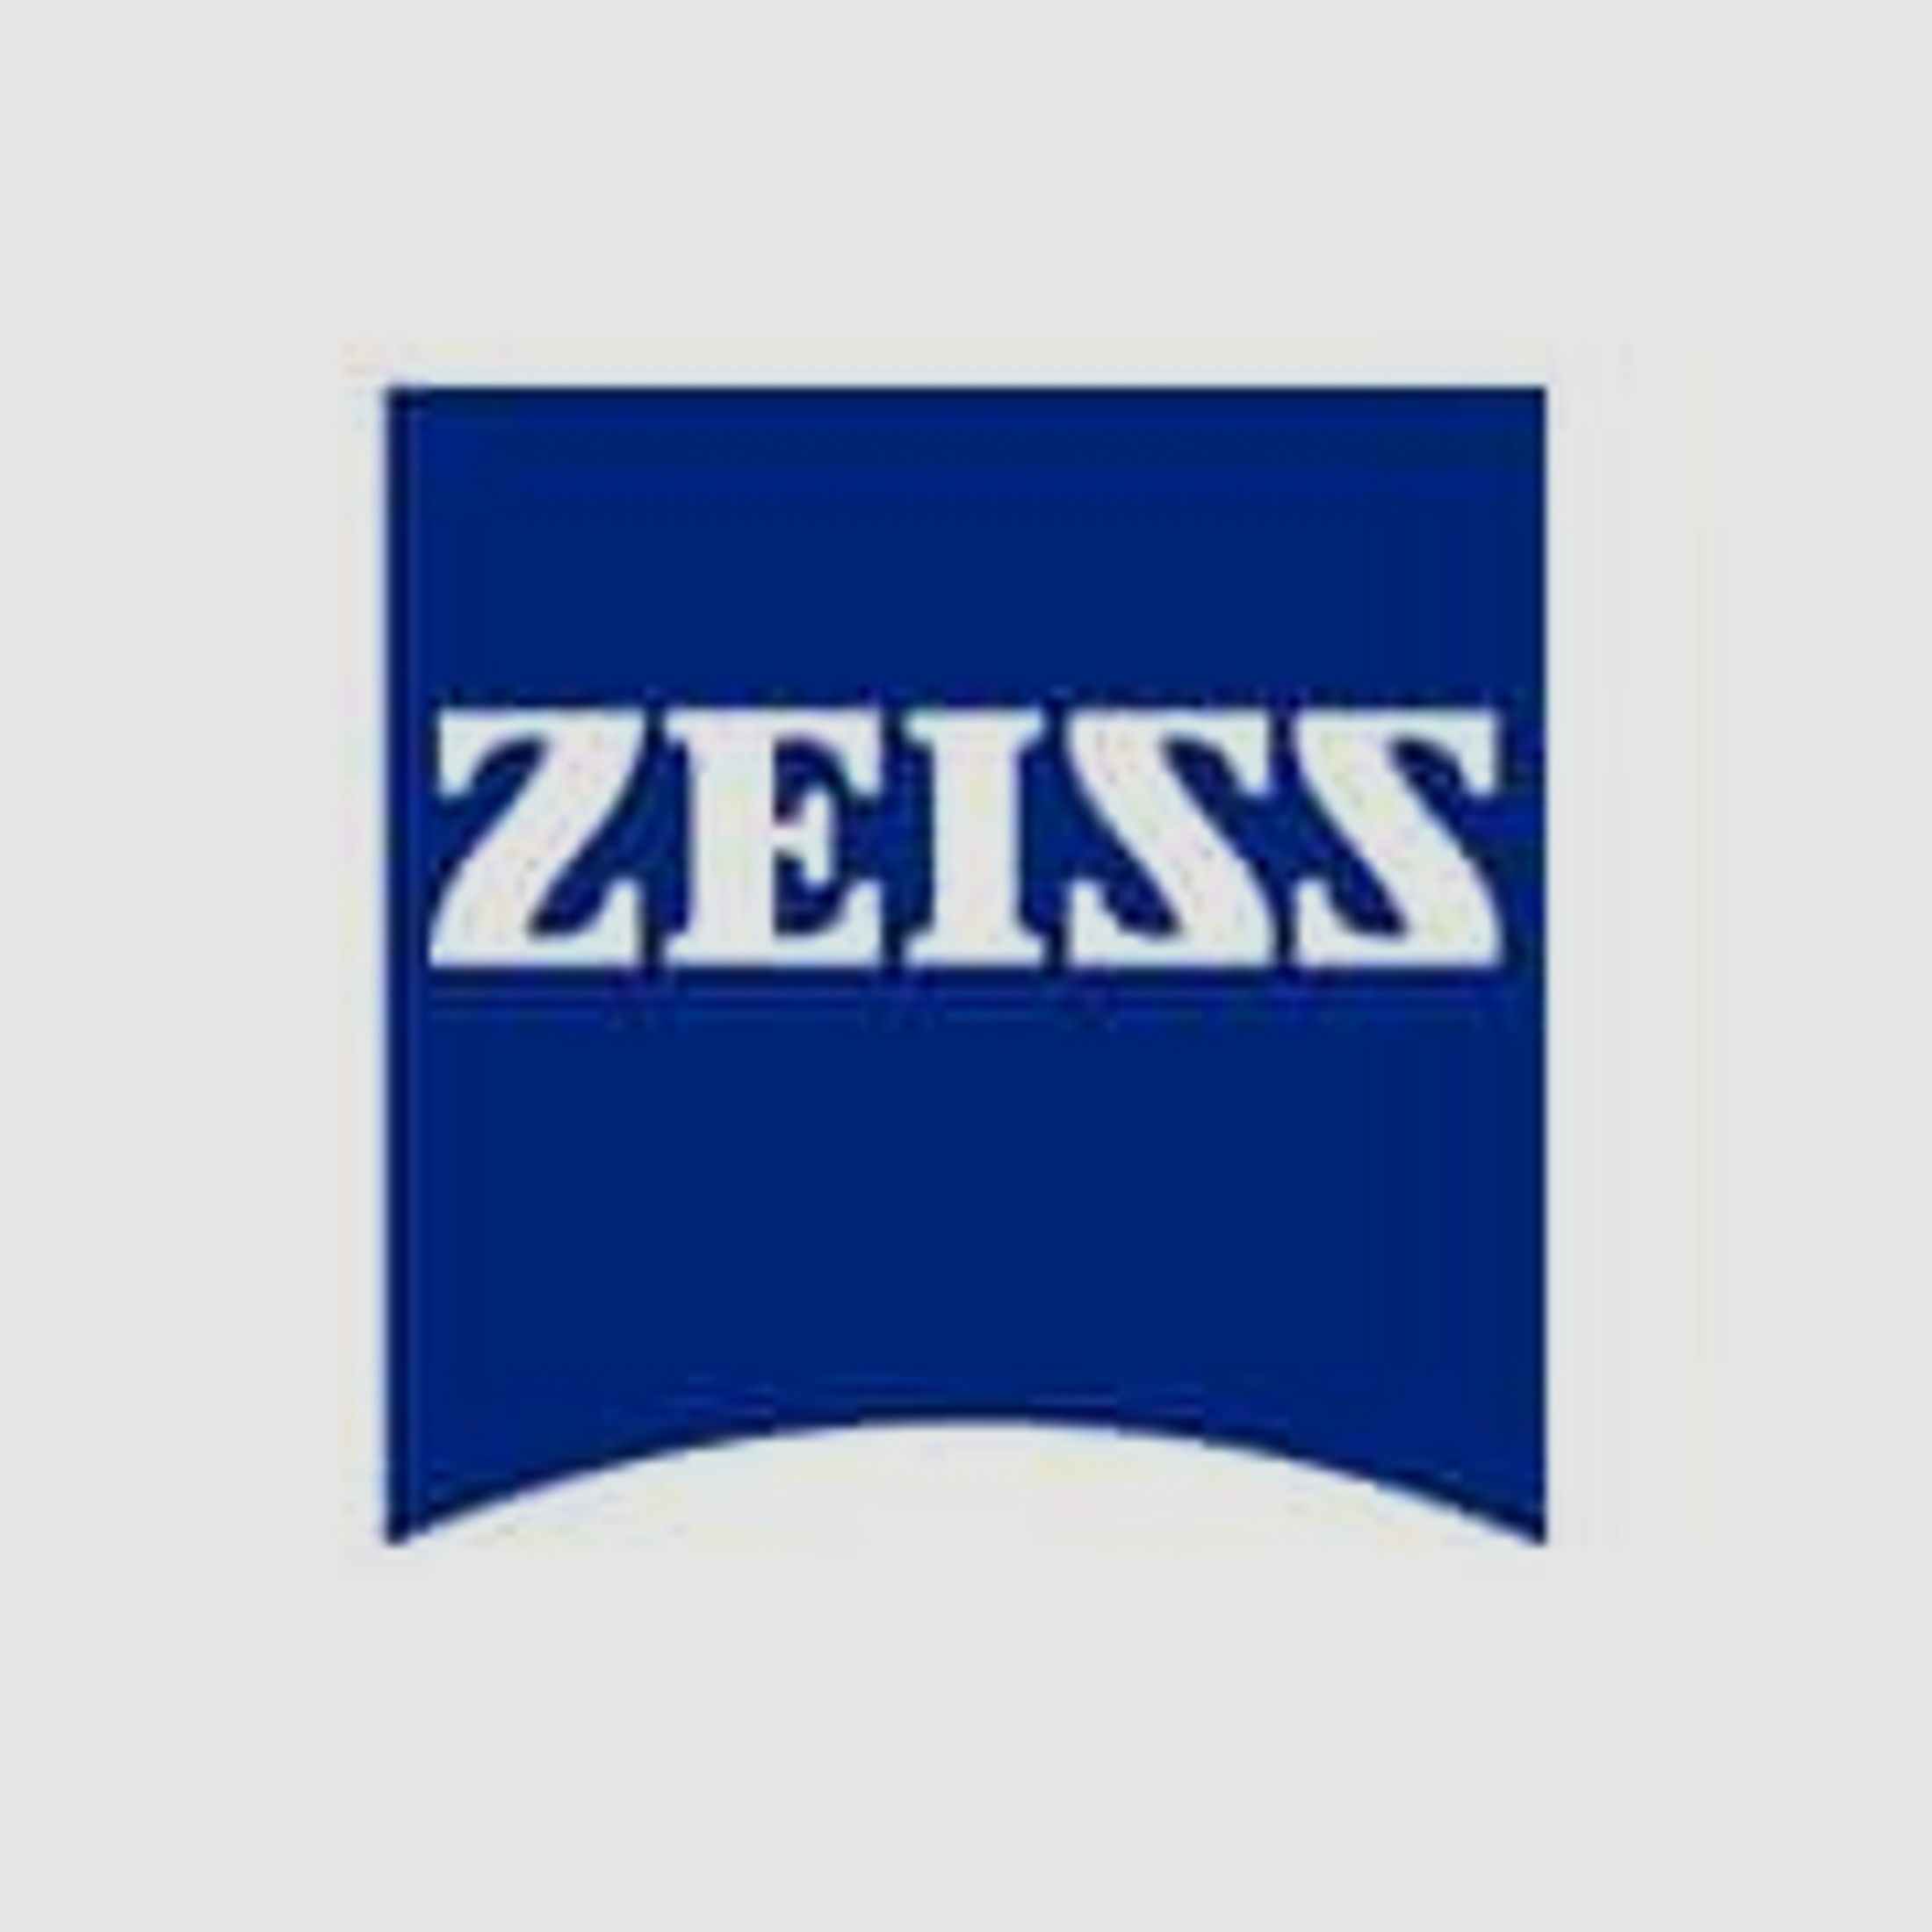 ZEISS Zubehör für Zielfernrohre Okular-Gummischutz 522100-8016 f. Victory V8